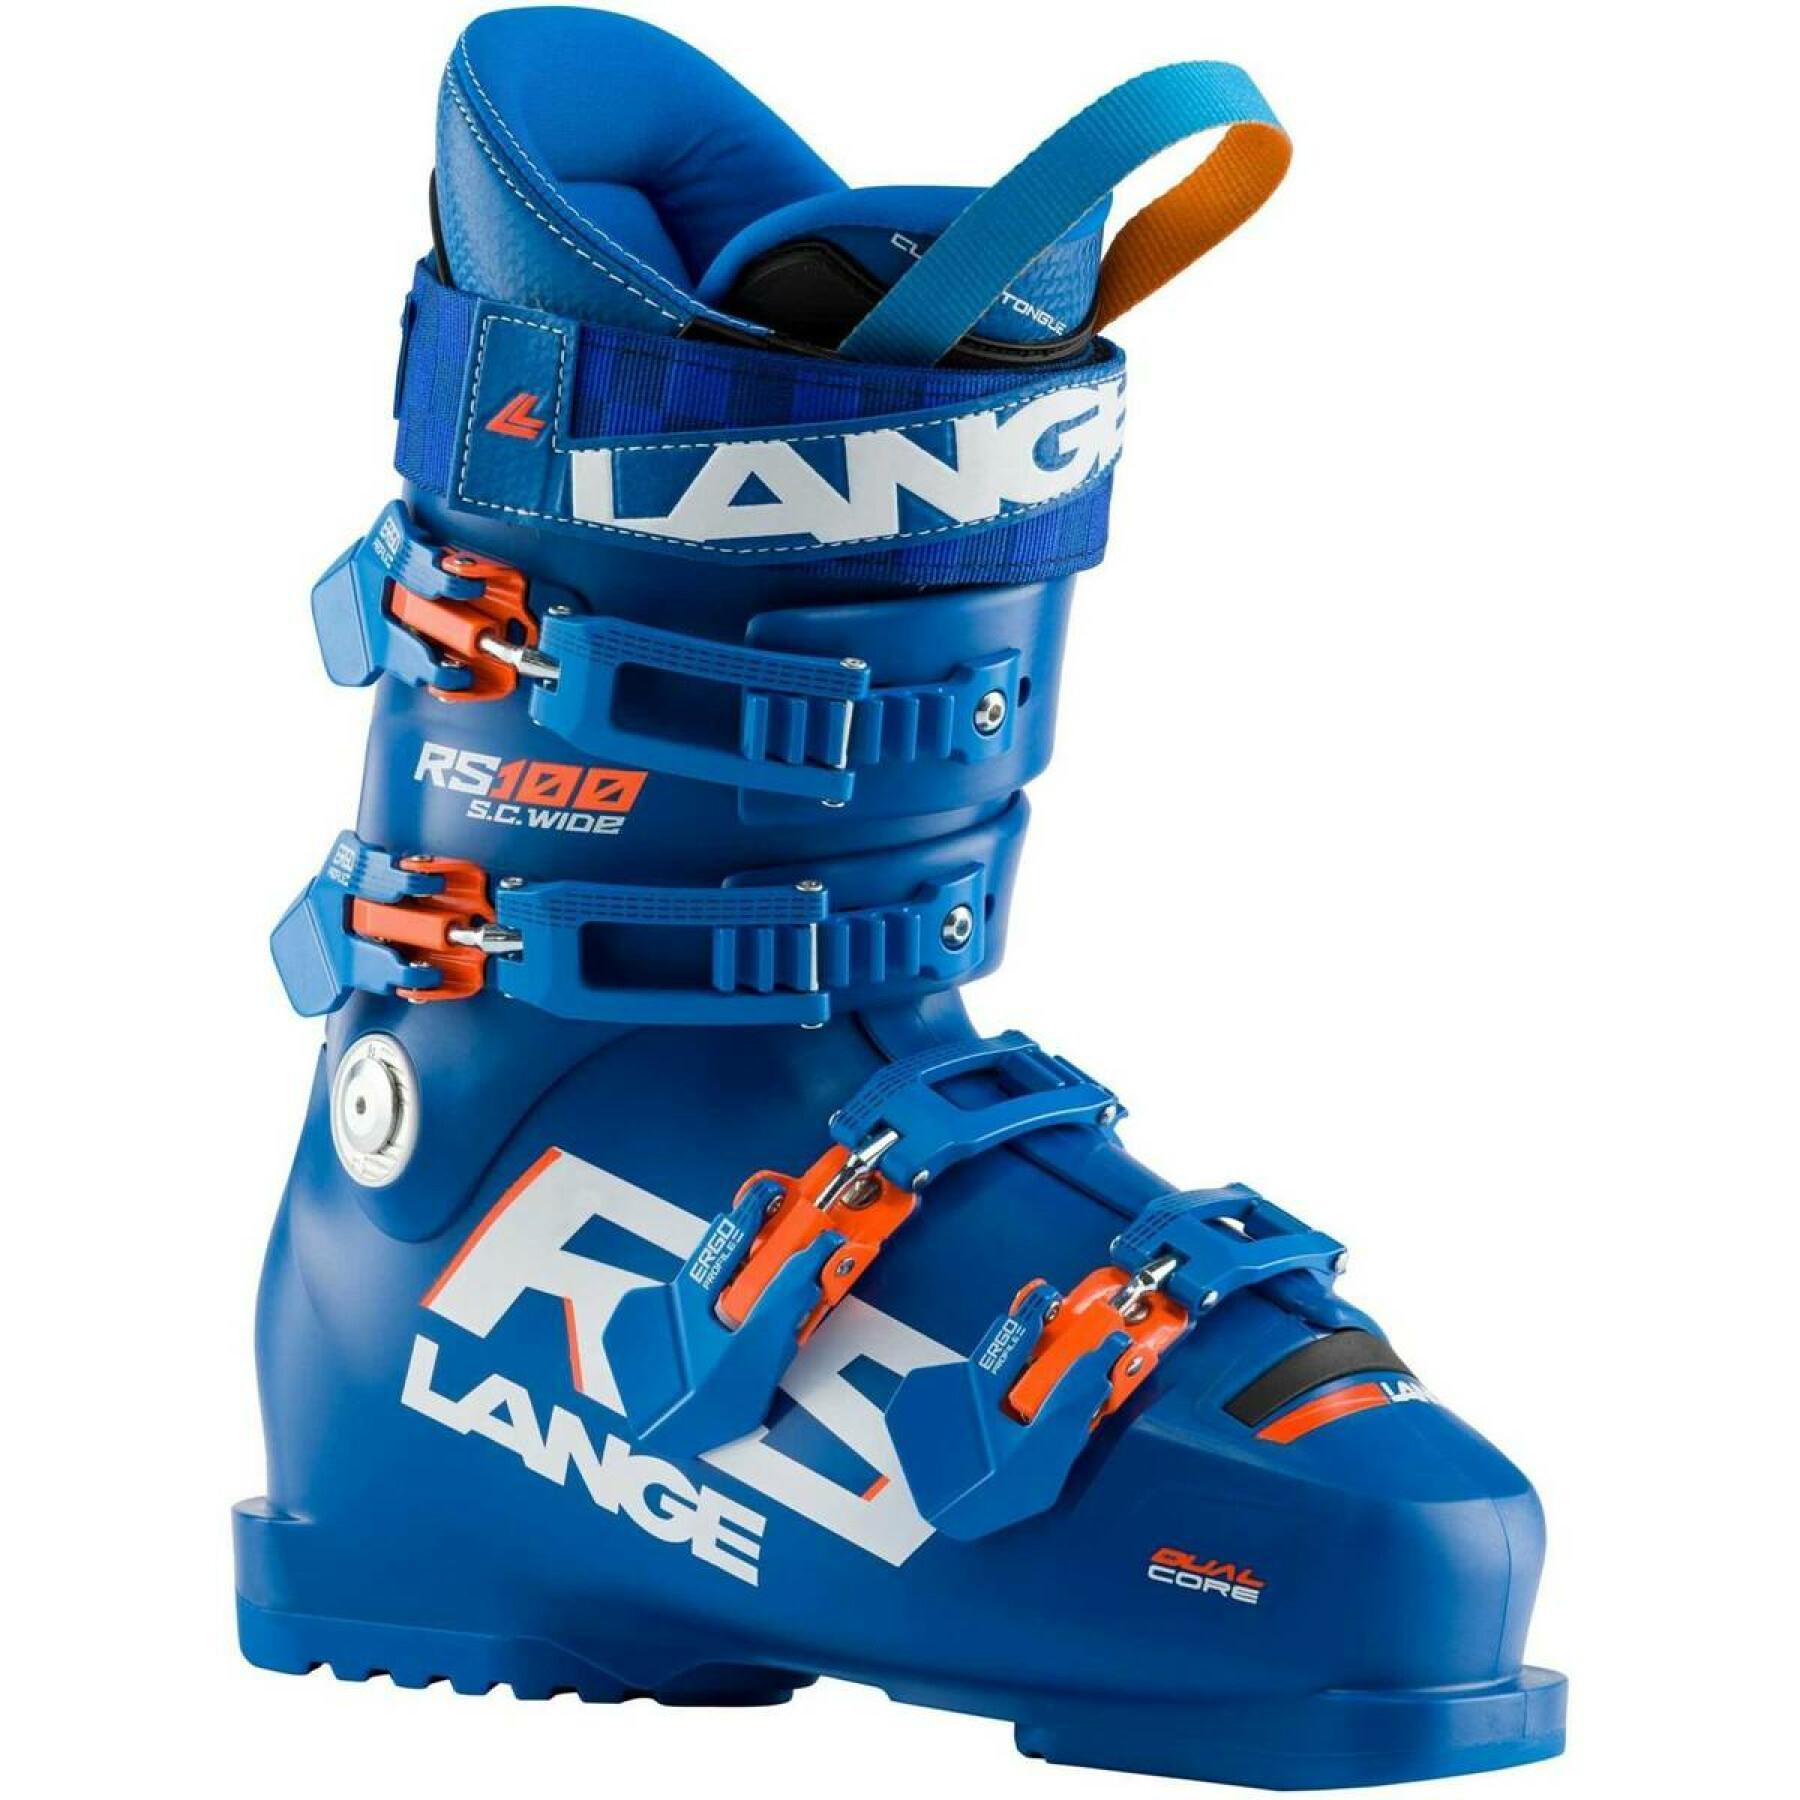 Botas de esqui para crianças Lange rs 100 s.c. wide